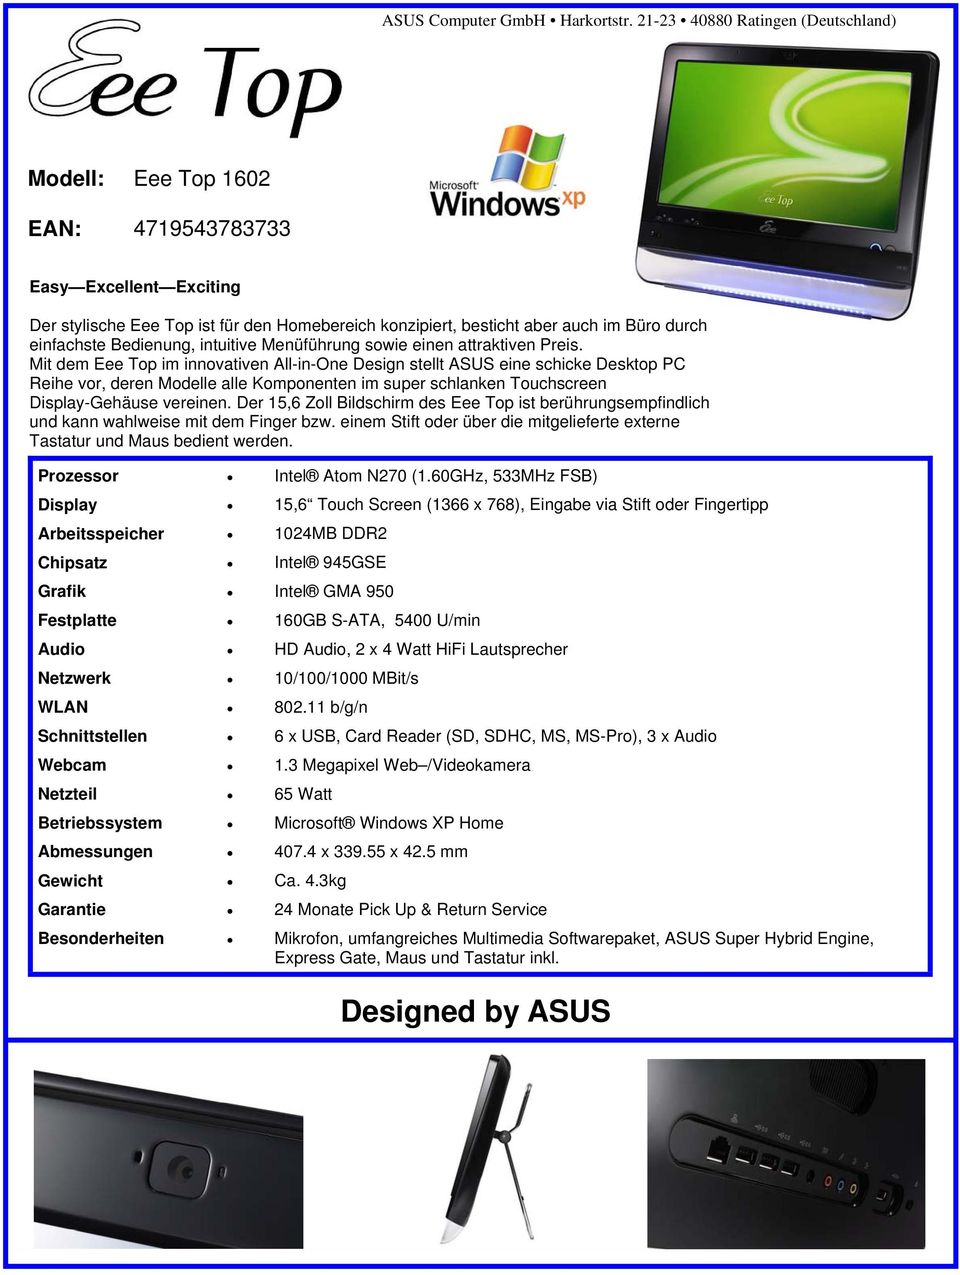 Mit dem Eee Top im innovativen All-in-One Design stellt ASUS eine schicke Desktop PC Reihe vor, deren Modelle alle Komponenten im super schlanken Touchscreen Display-Gehäuse vereinen.